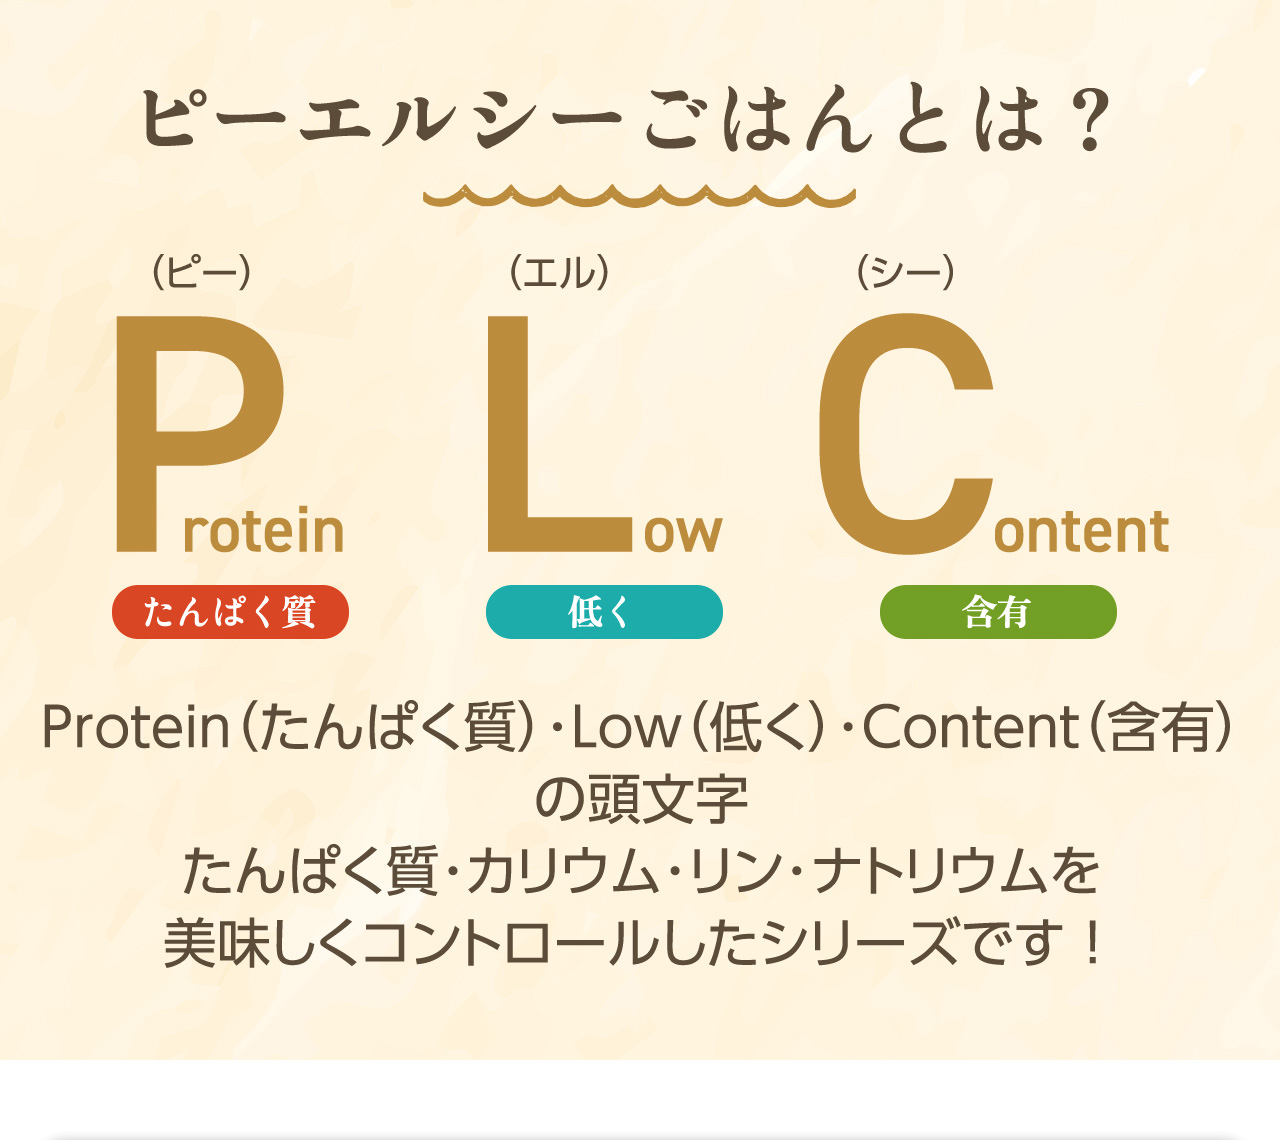 ピーエルシーごはんとは？ Protein（たんぱく質）・Low（低く）・Content（含有）の頭文字 たんぱく質・カリウム・リン・ナトリウムを美味しくコントロールしたシリーズです！